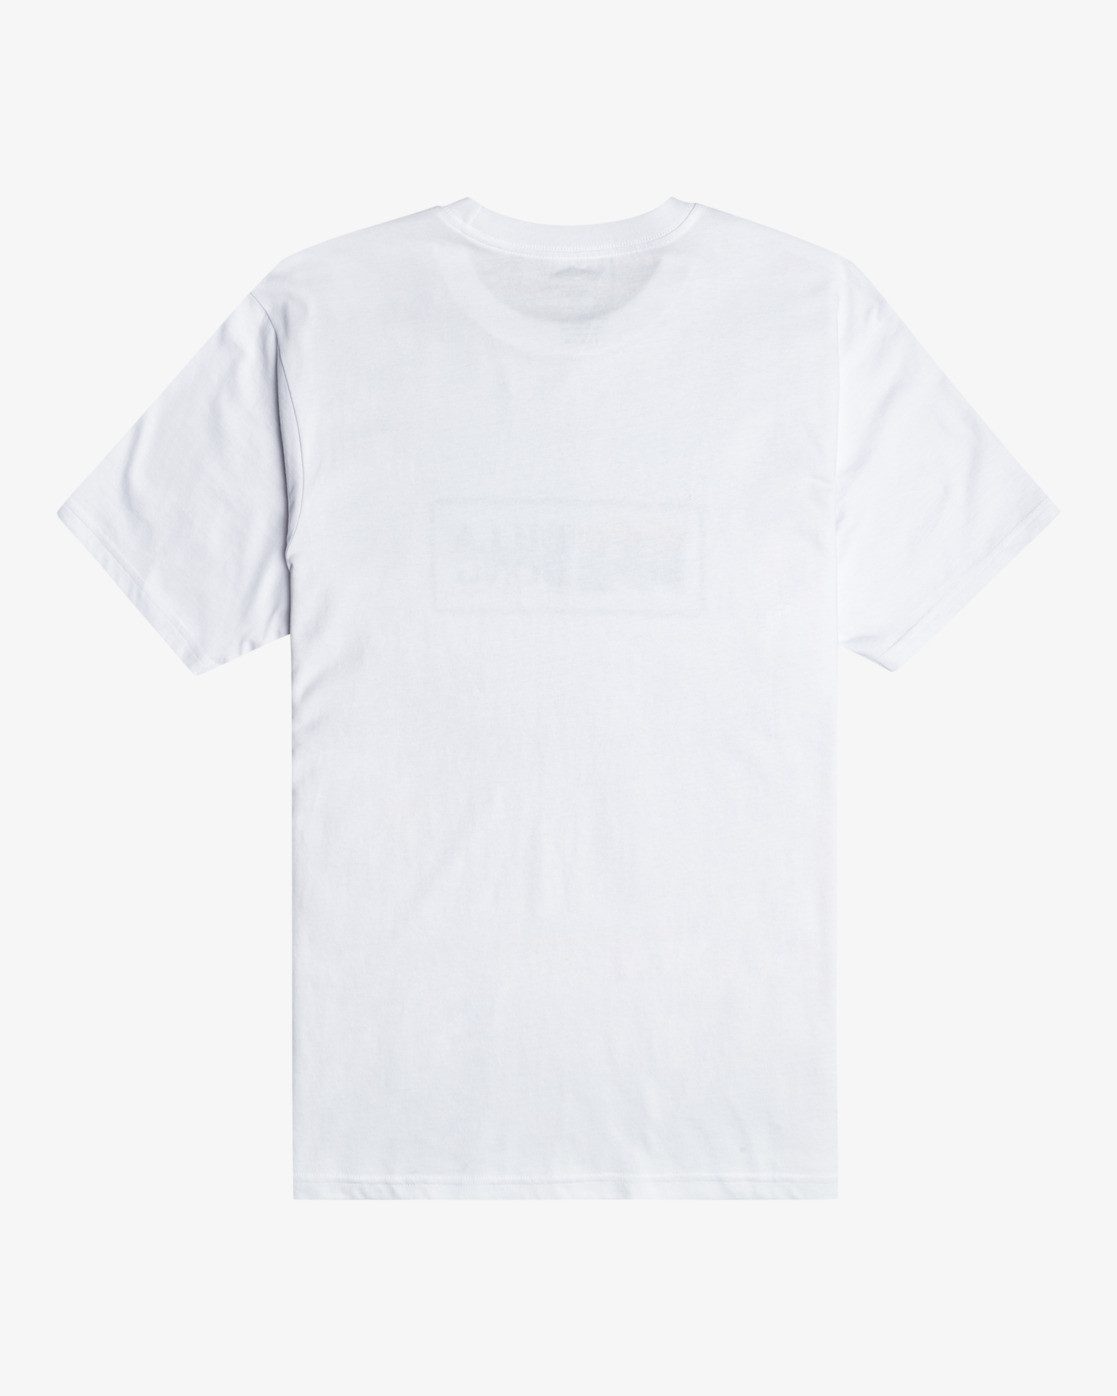 Billabong White T-Shirt Swell